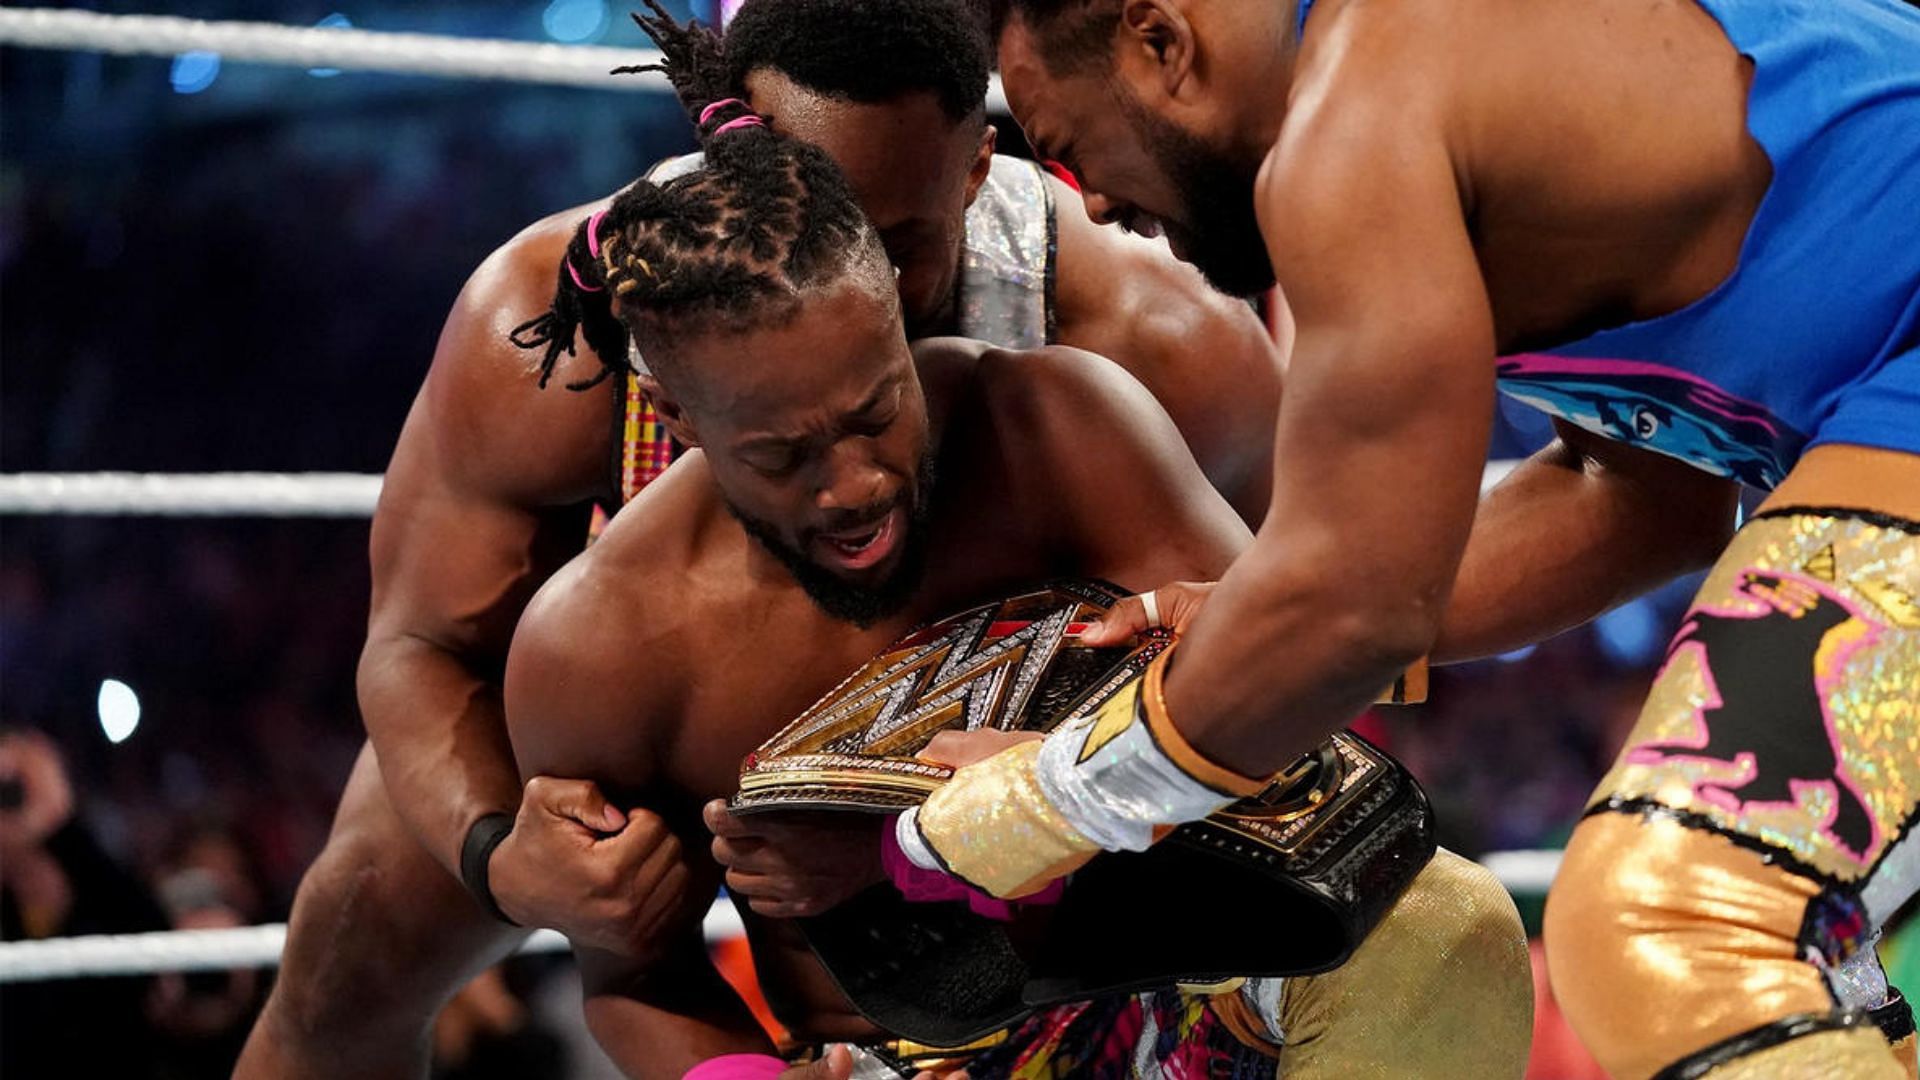 Kofi Kingston won the WWE Championship at WrestleMania 35!